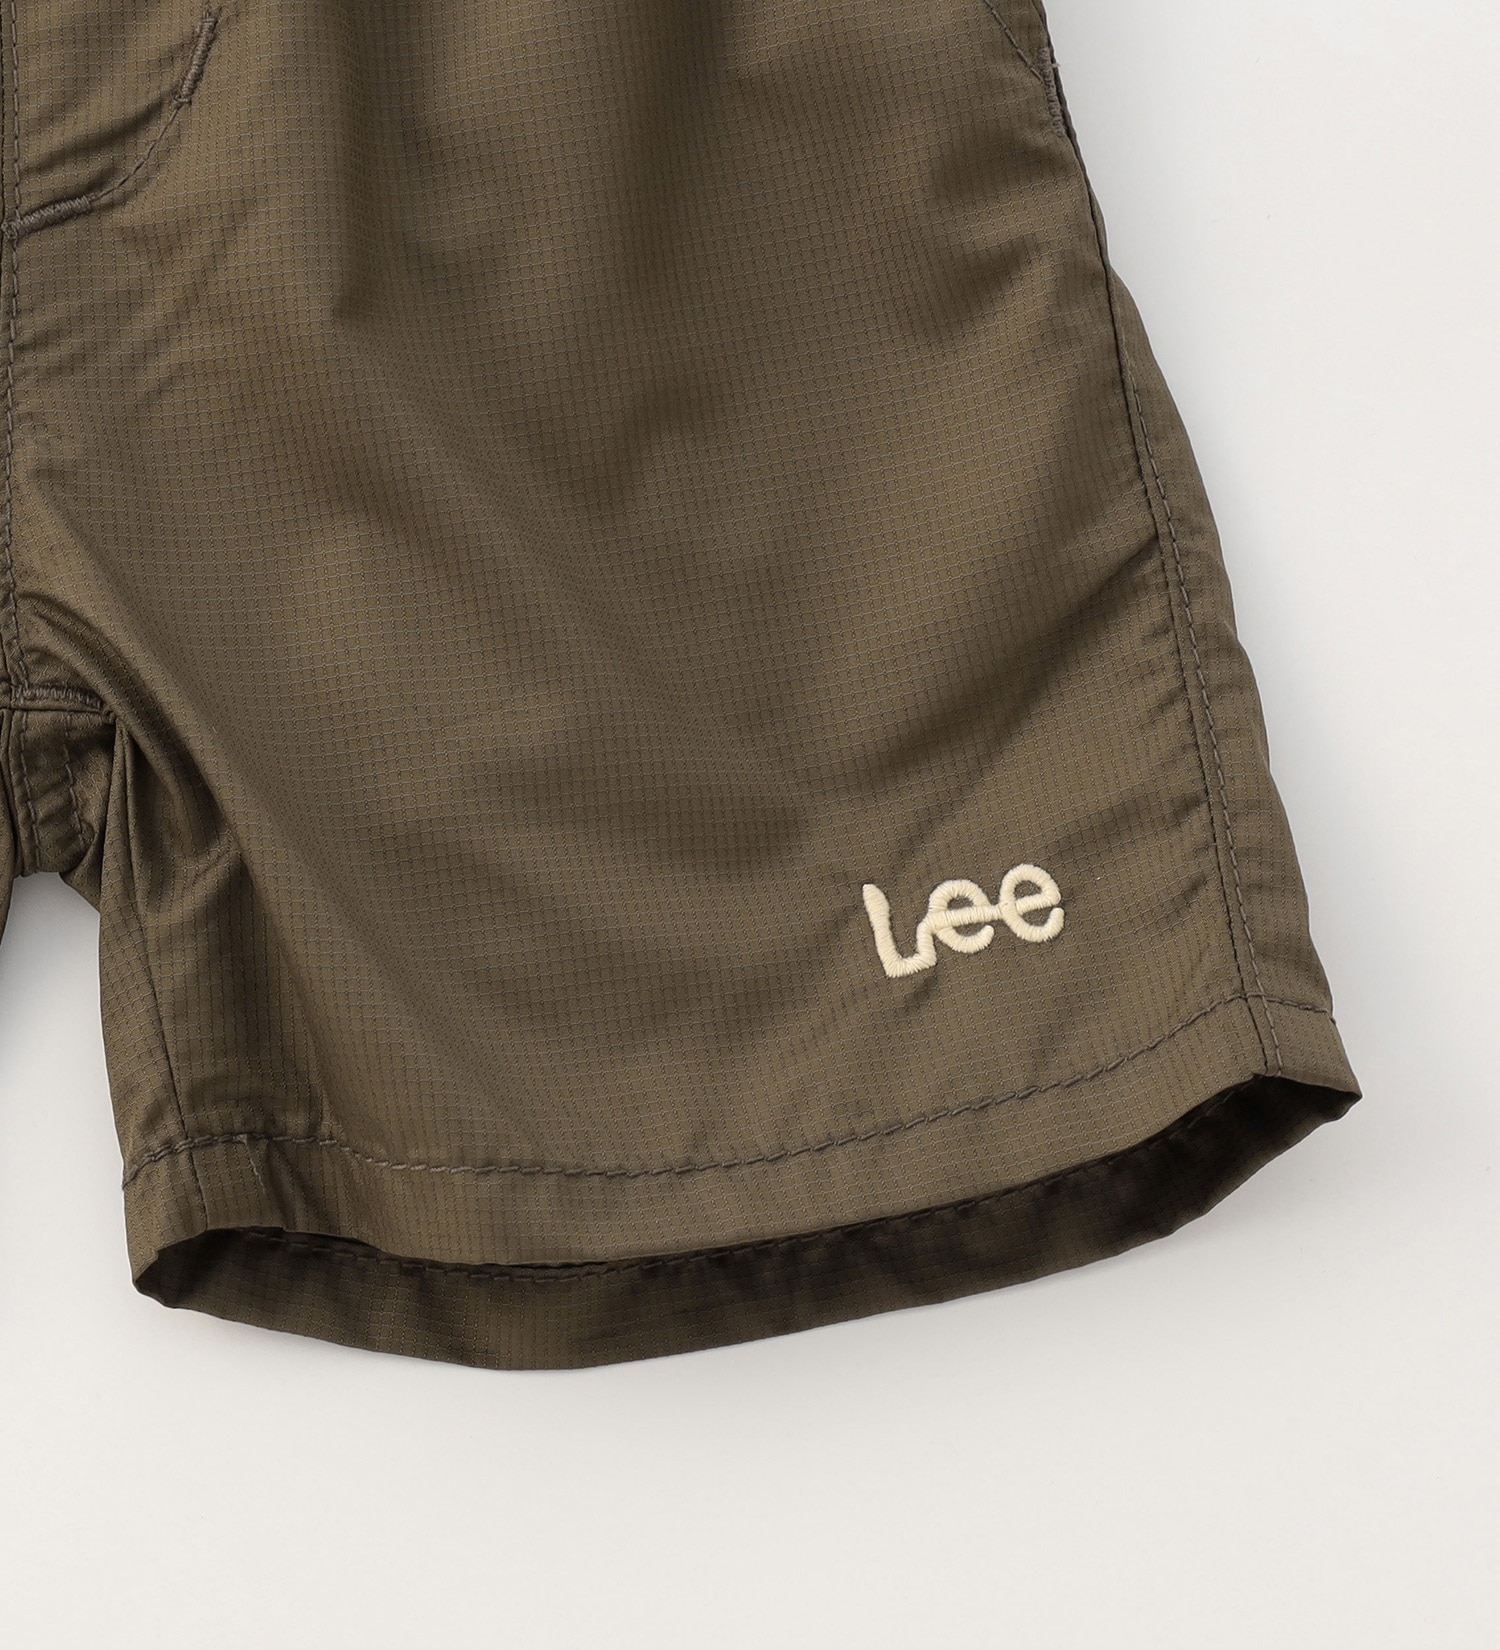 Lee(リー)の【80/90cm】ベビー アスレチックショーツ|パンツ/パンツ/キッズ|オリーブ